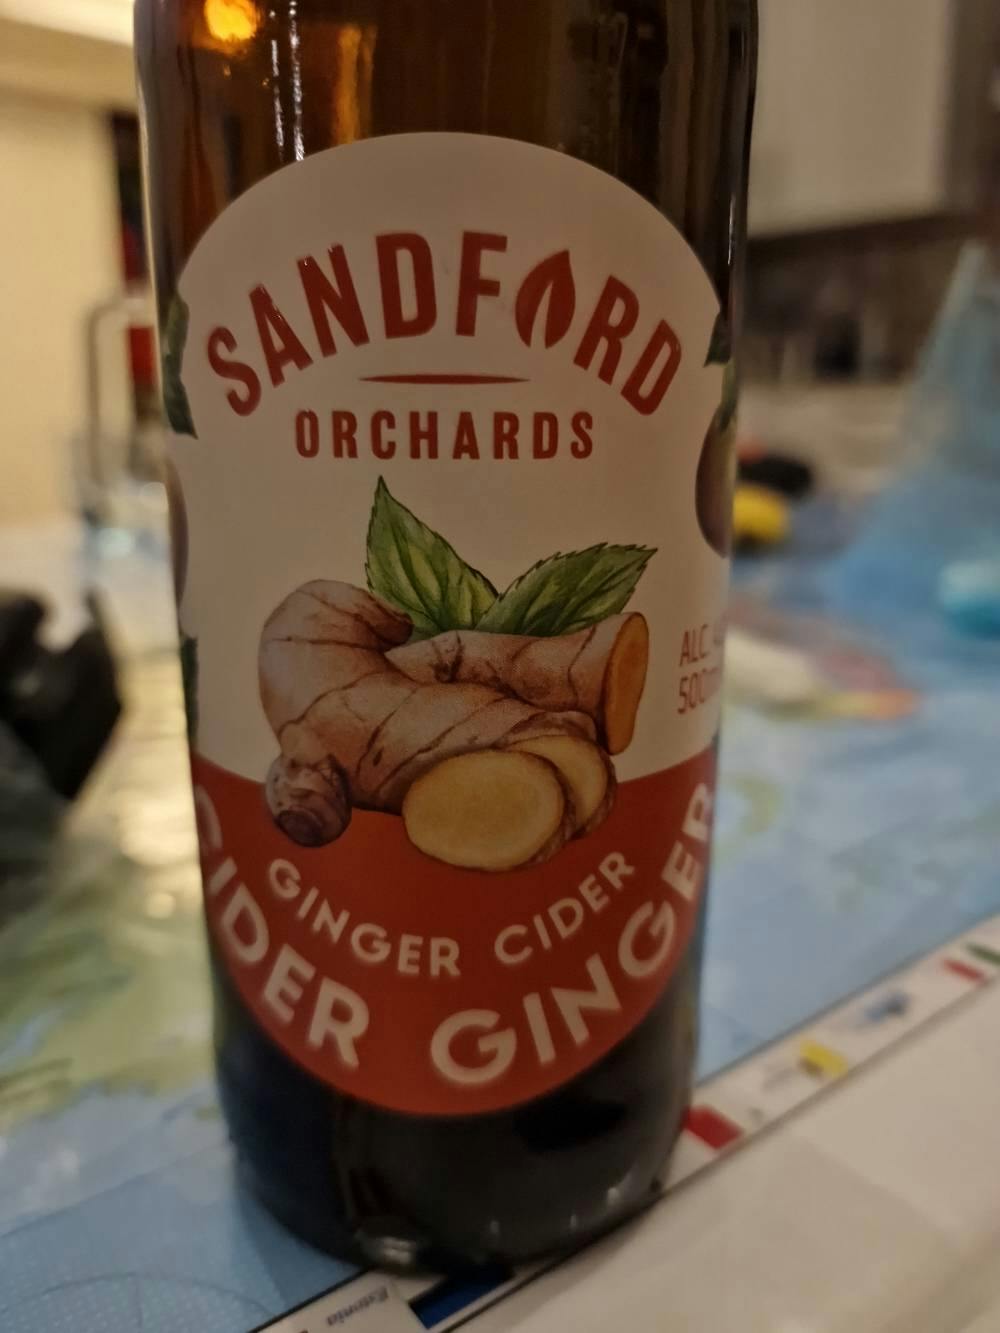 Ginger cider, Sandford Orchards